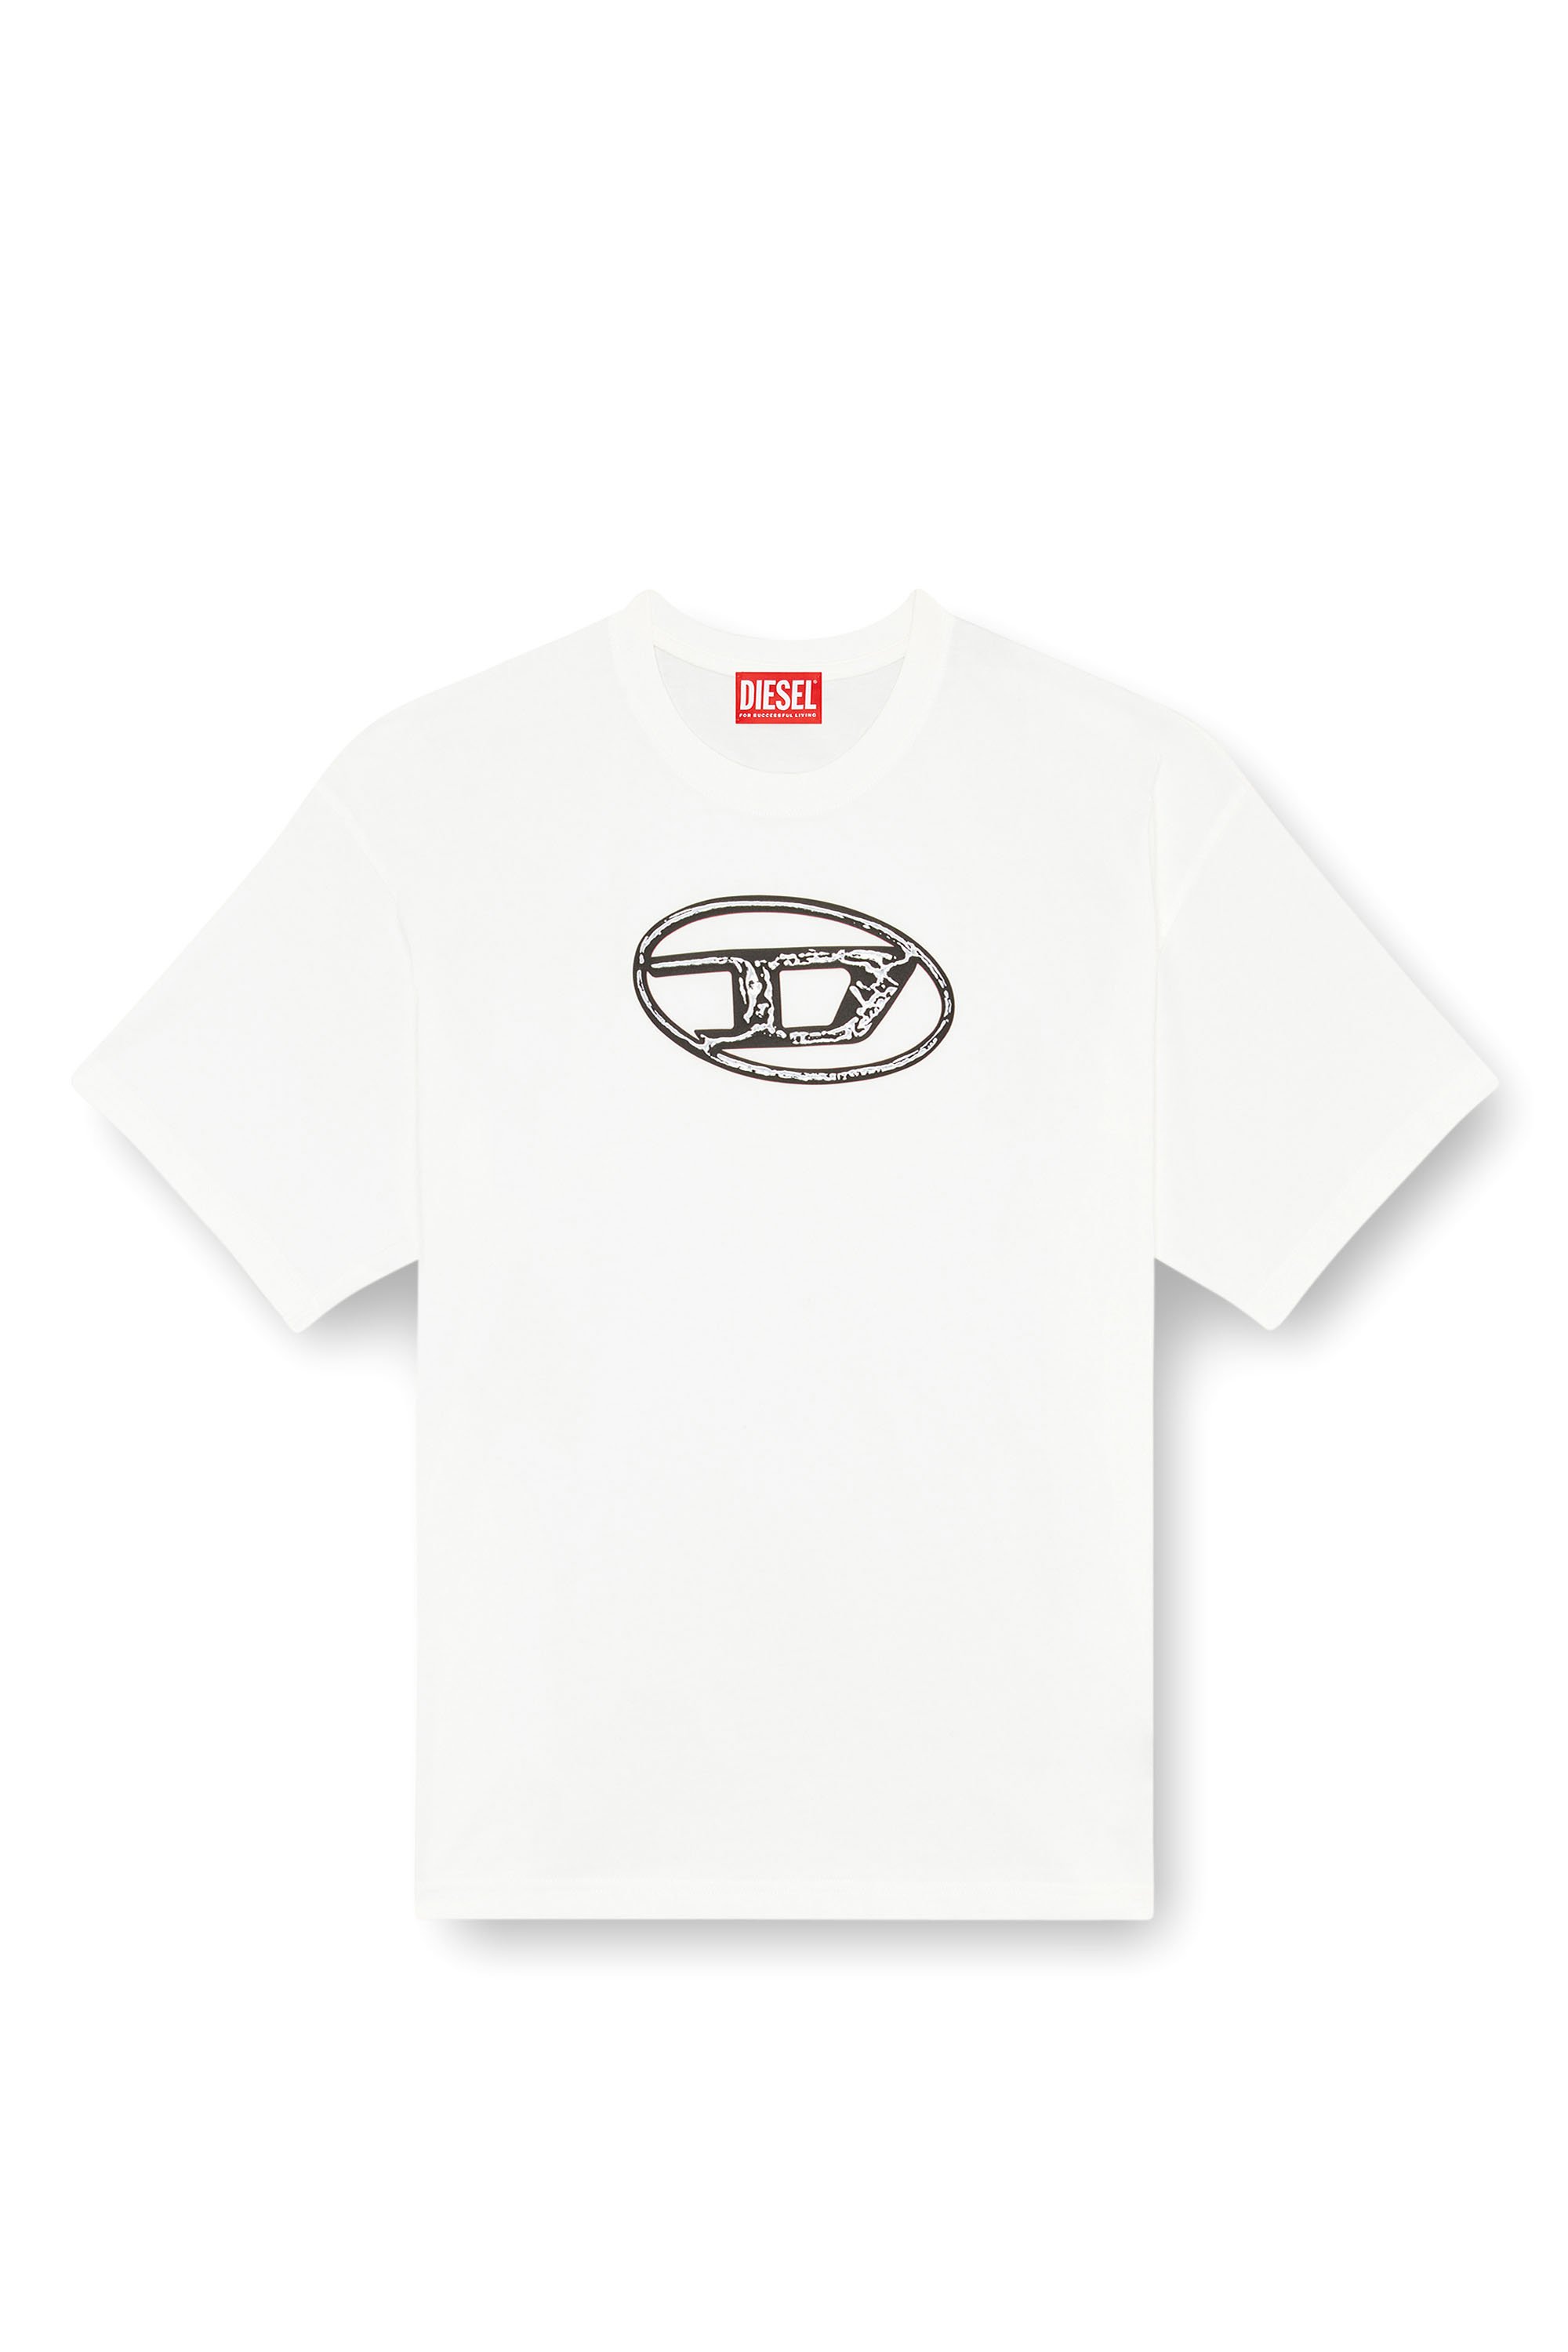 Diesel - T-BOXT-Q22, Hombre Camiseta desteñida con estampado Oval D in Blanco - Image 4